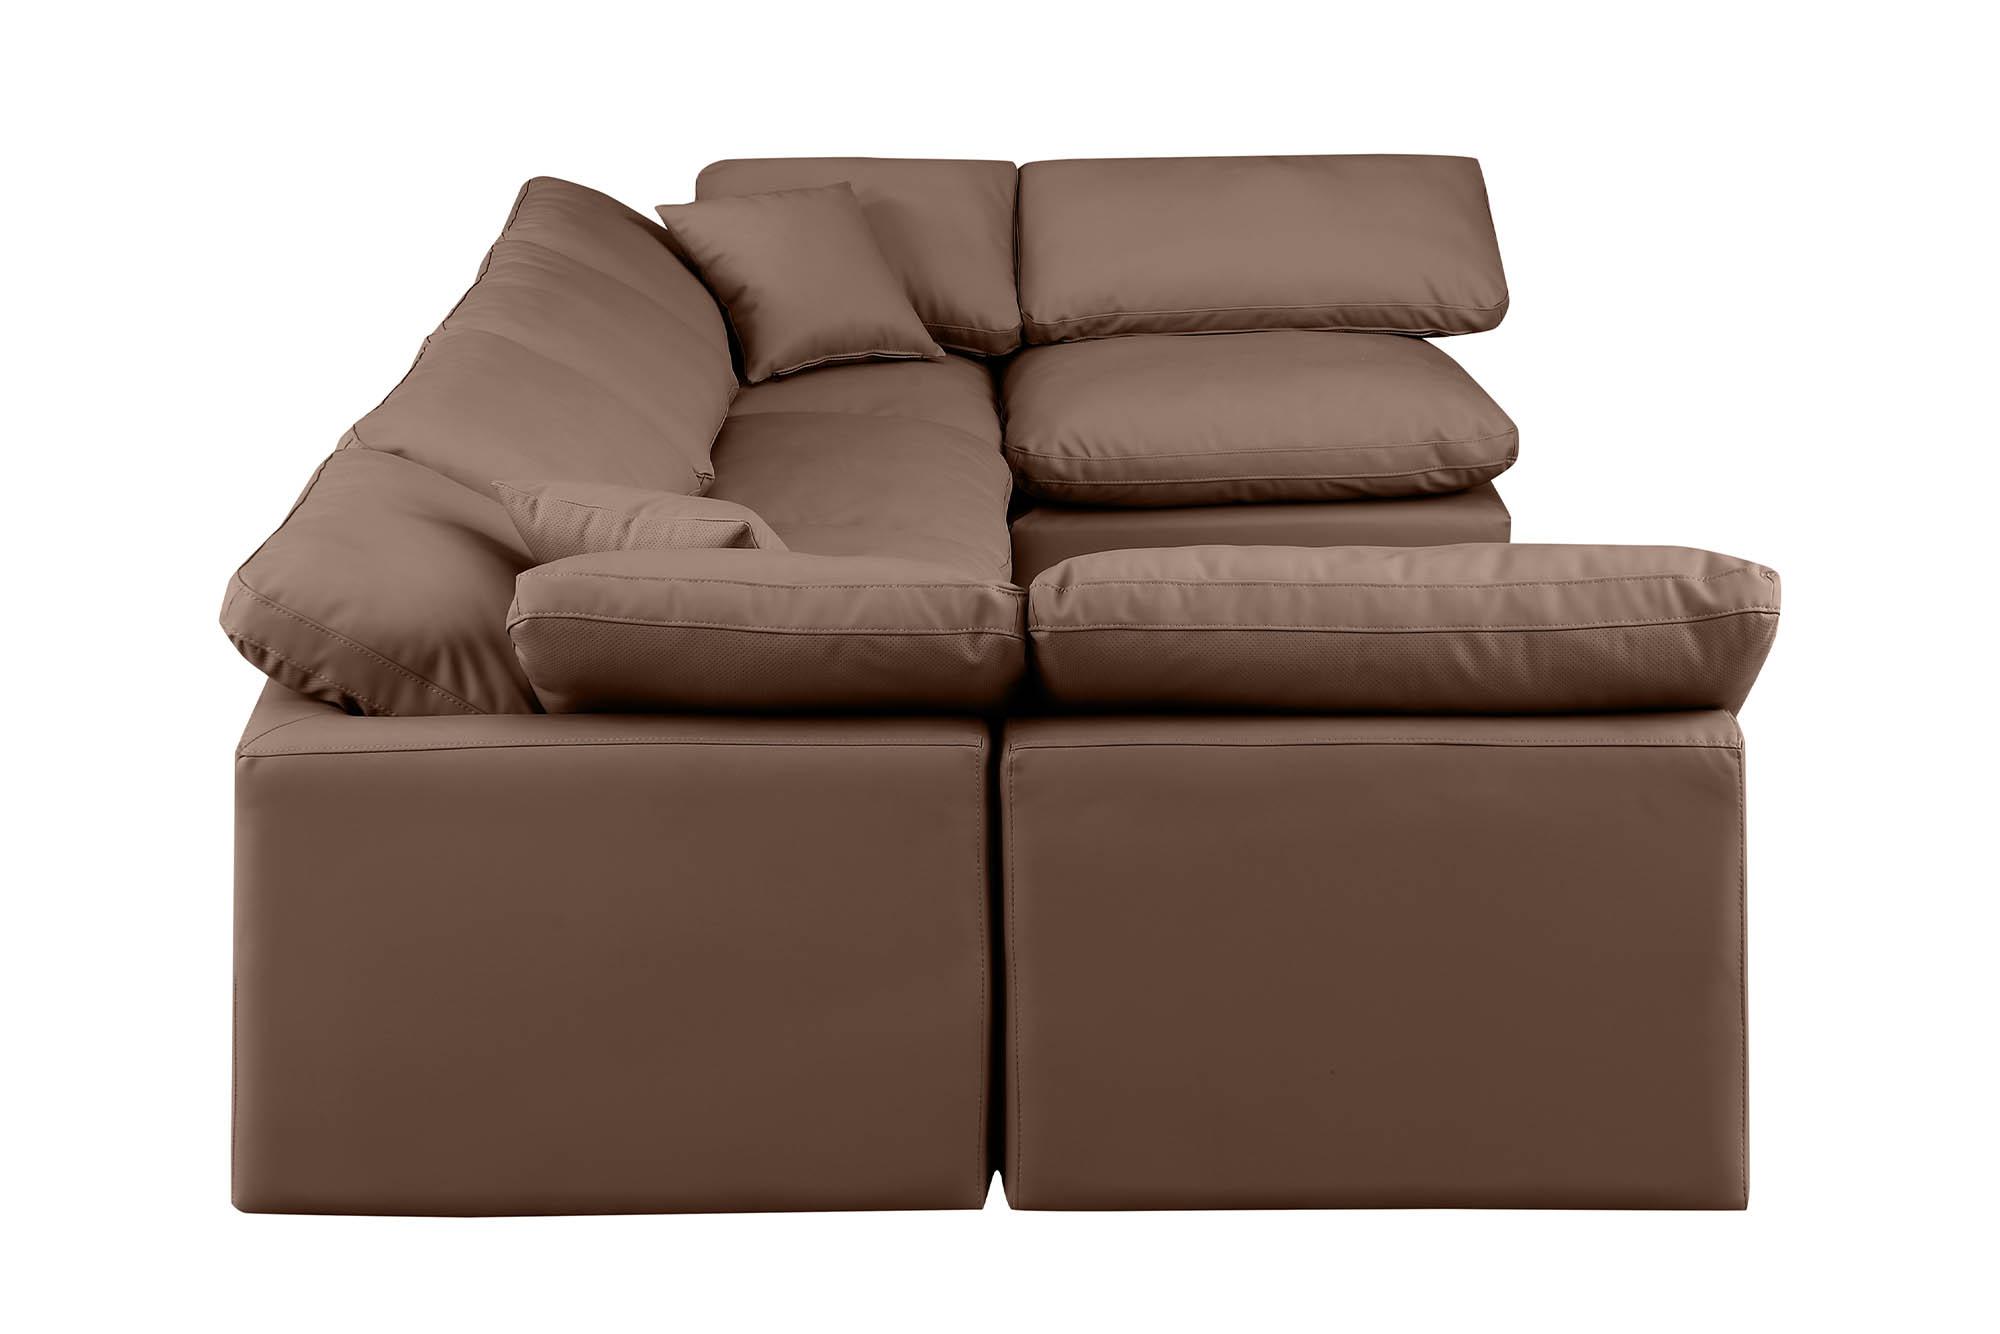 

    
Meridian Furniture INDULGE 146Brown-Sec6D Modular Sectional Sofa Brown 146Brown-Sec6D
